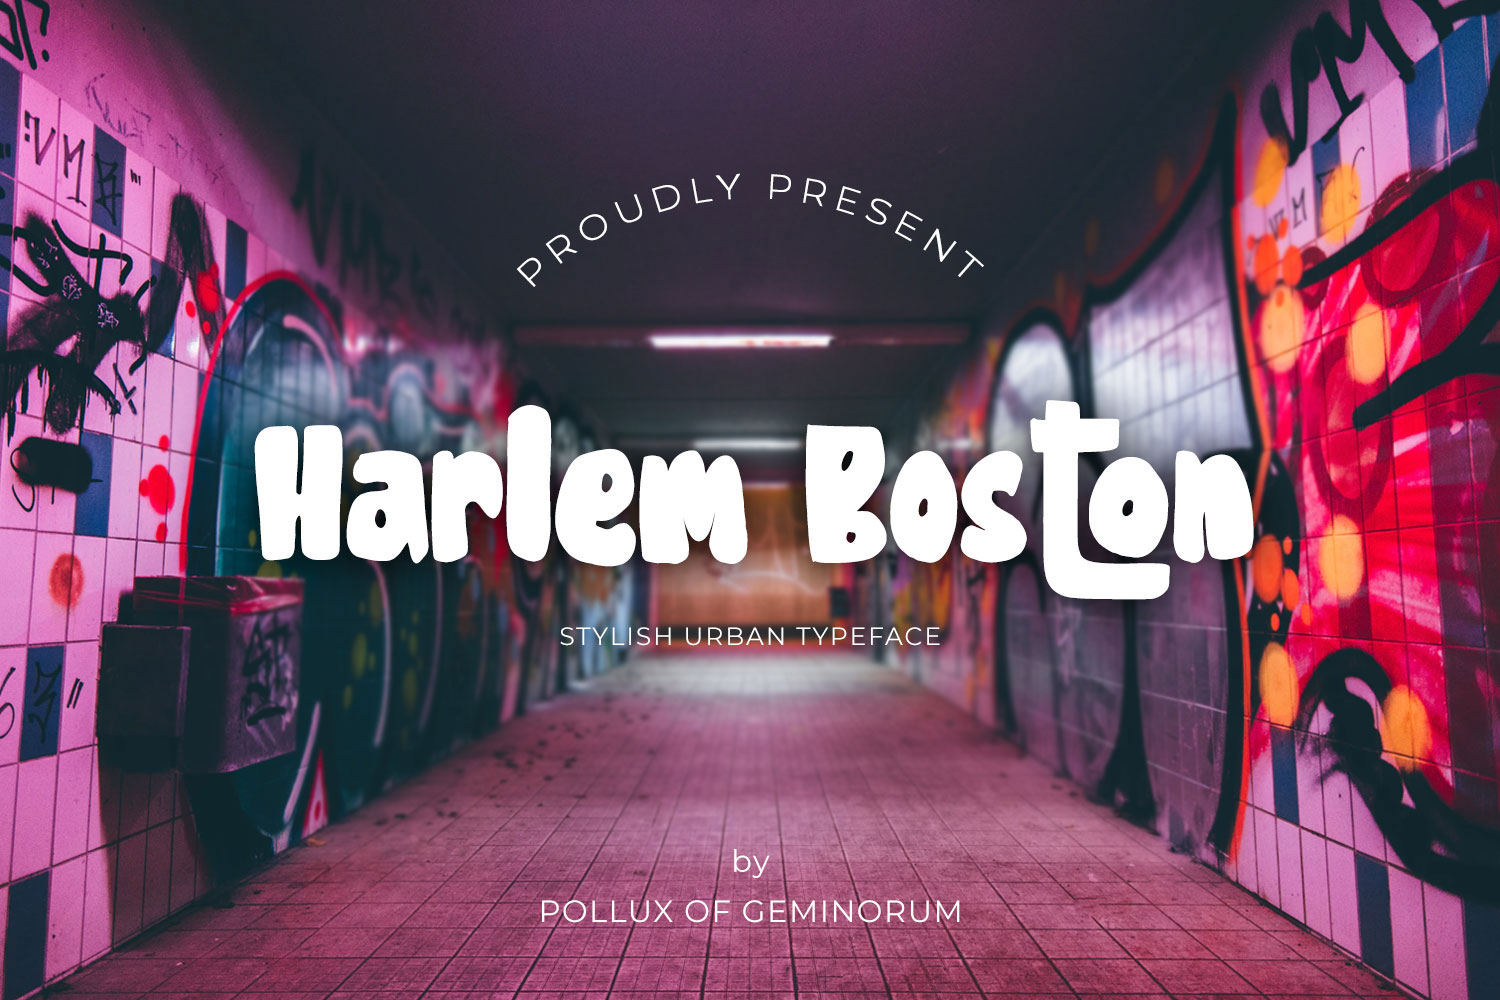 Harlem Boston